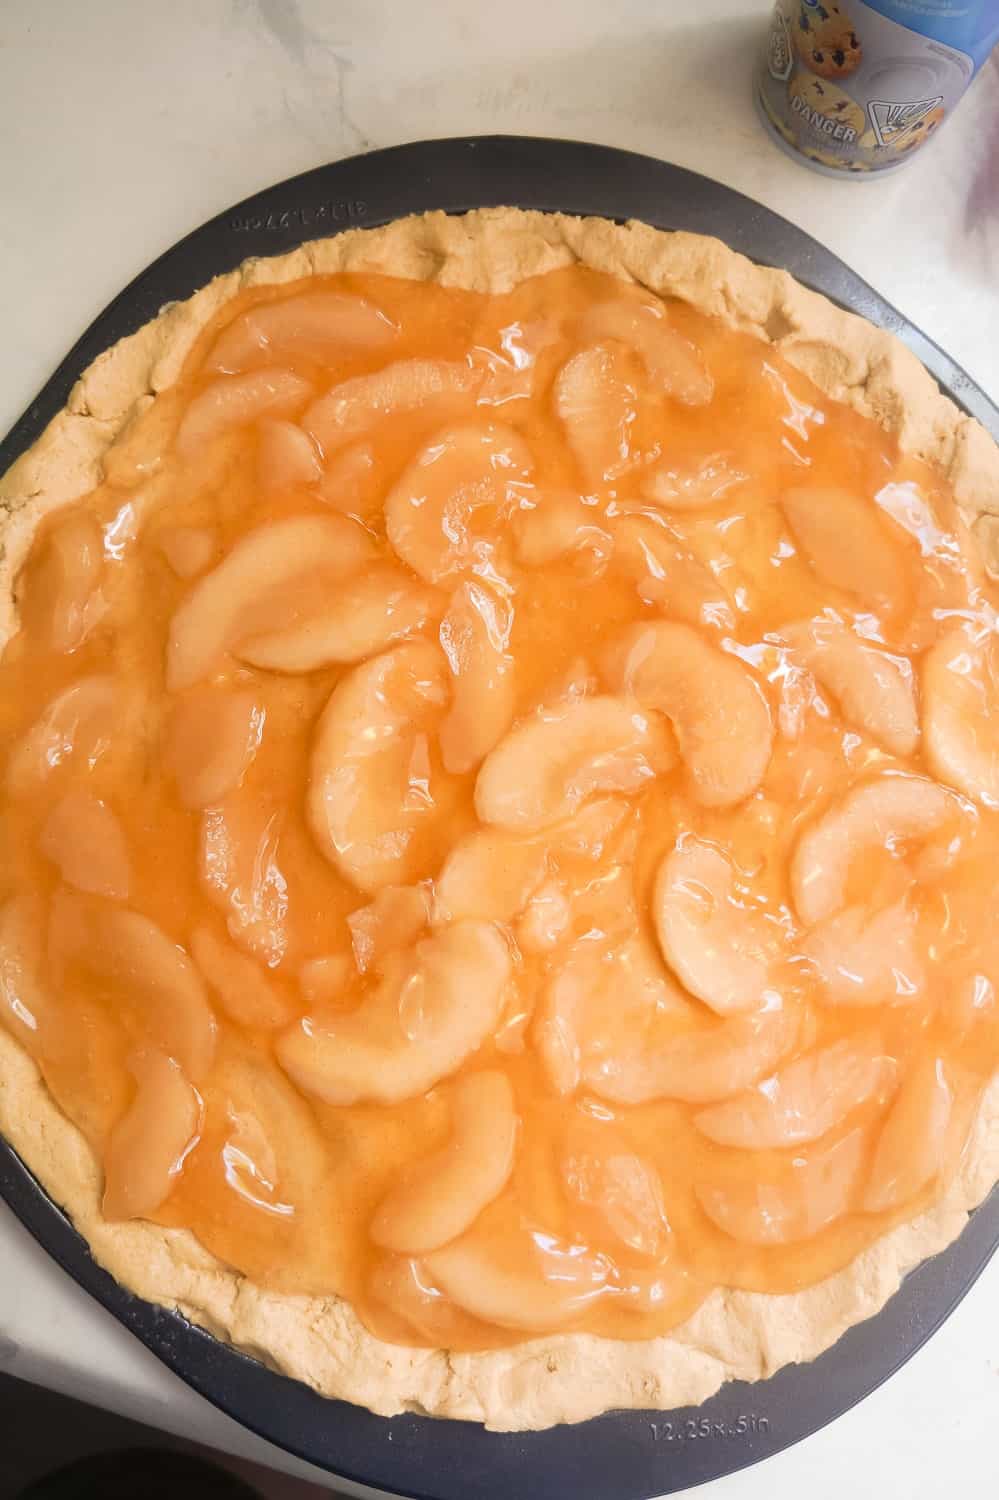 apple pie filling spread over peanut butter cookie dough